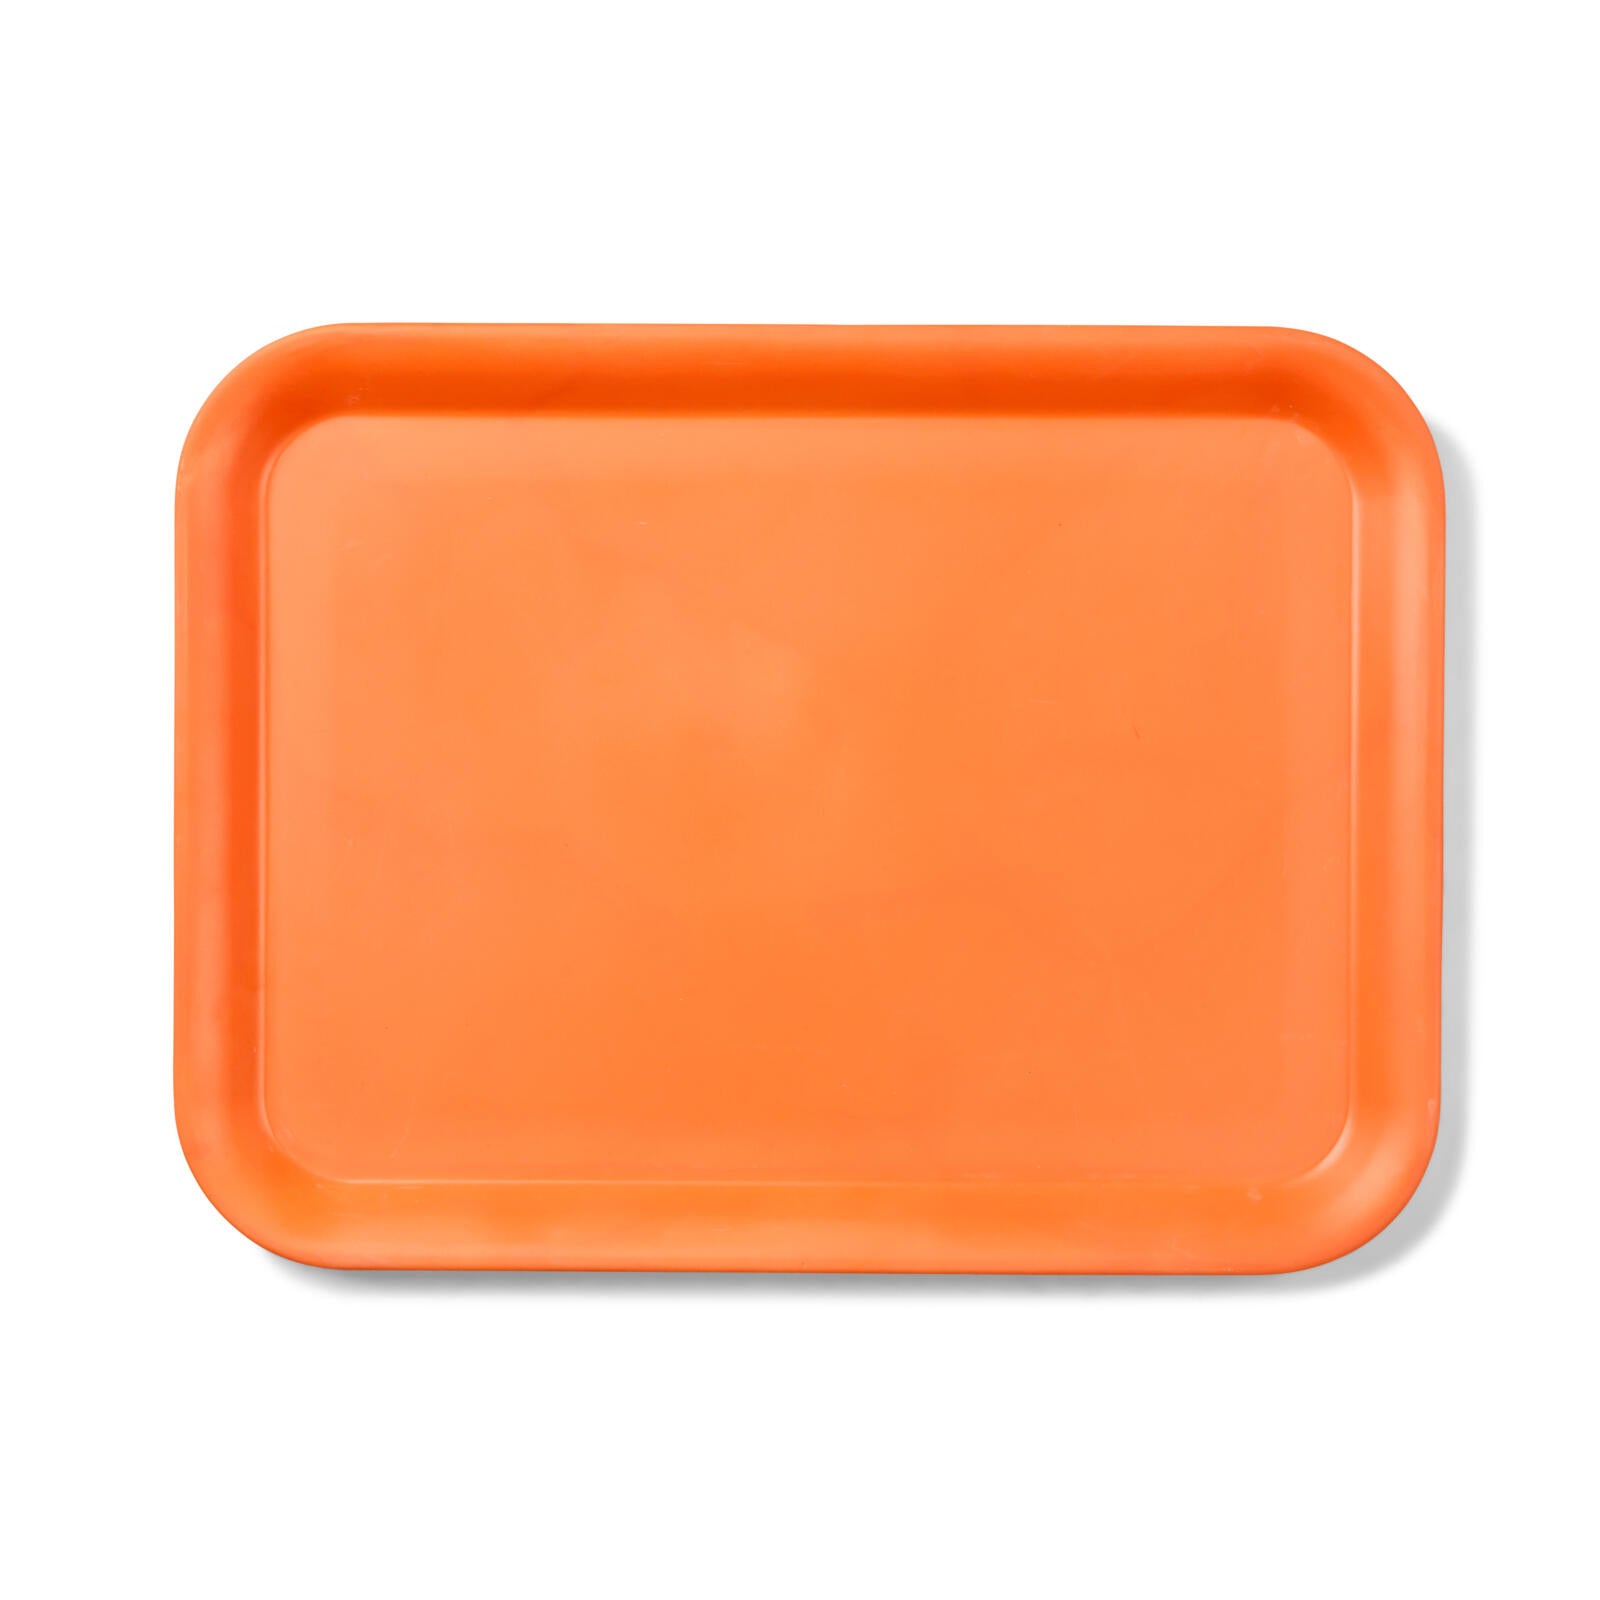 REFRESH Orange tray, H 2 x W 32.5 x L 43.4 cm